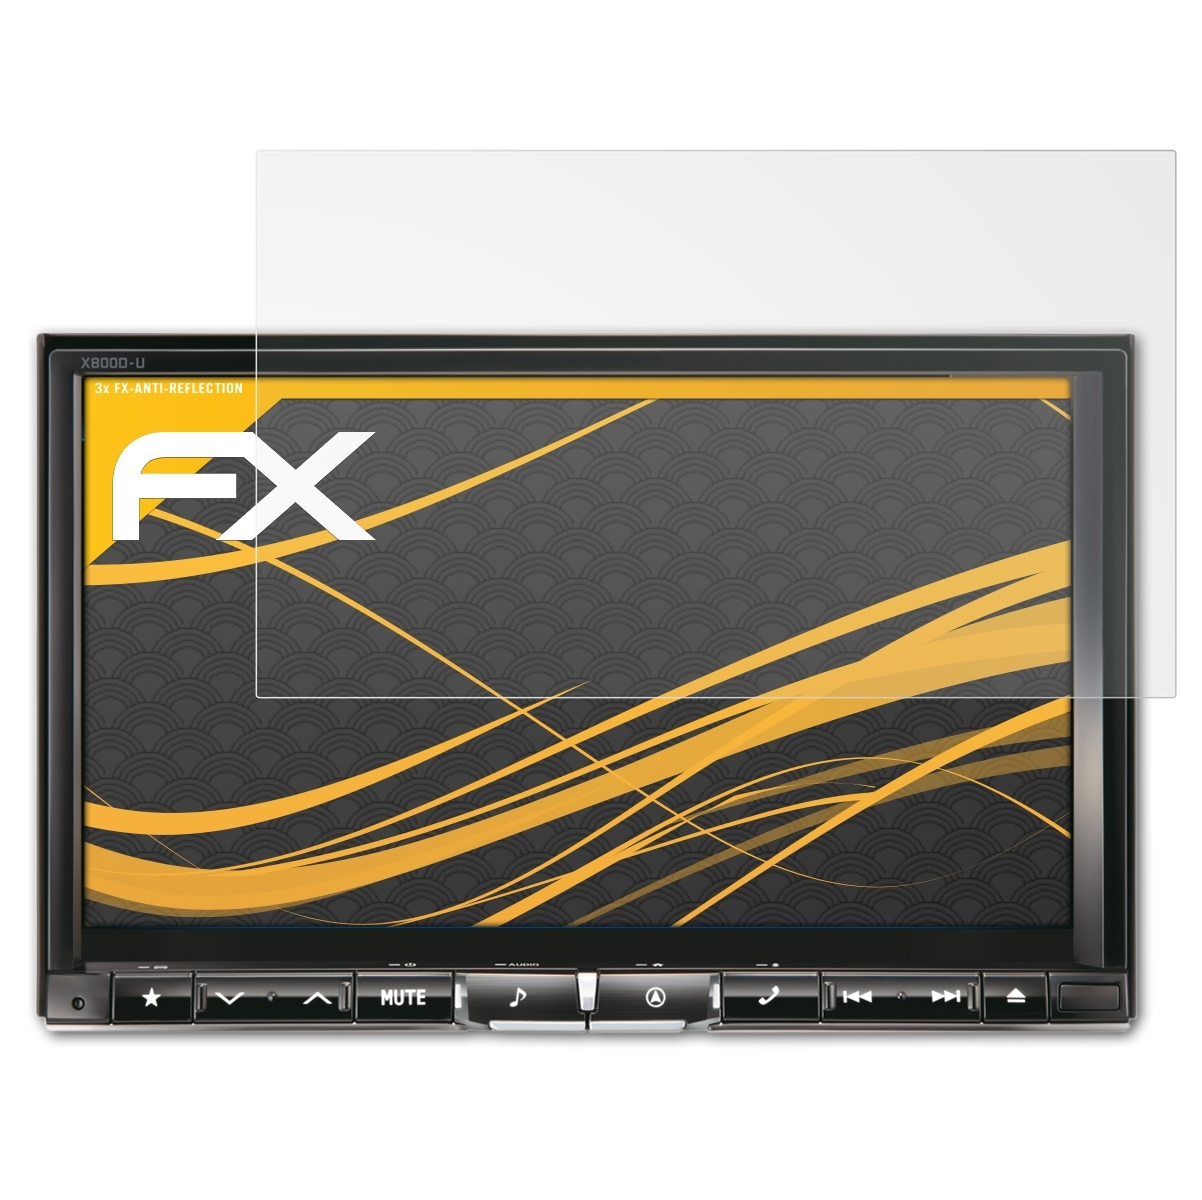 3x Displayschutz(für FX-Antireflex X800D-U) Alpine ATFOLIX